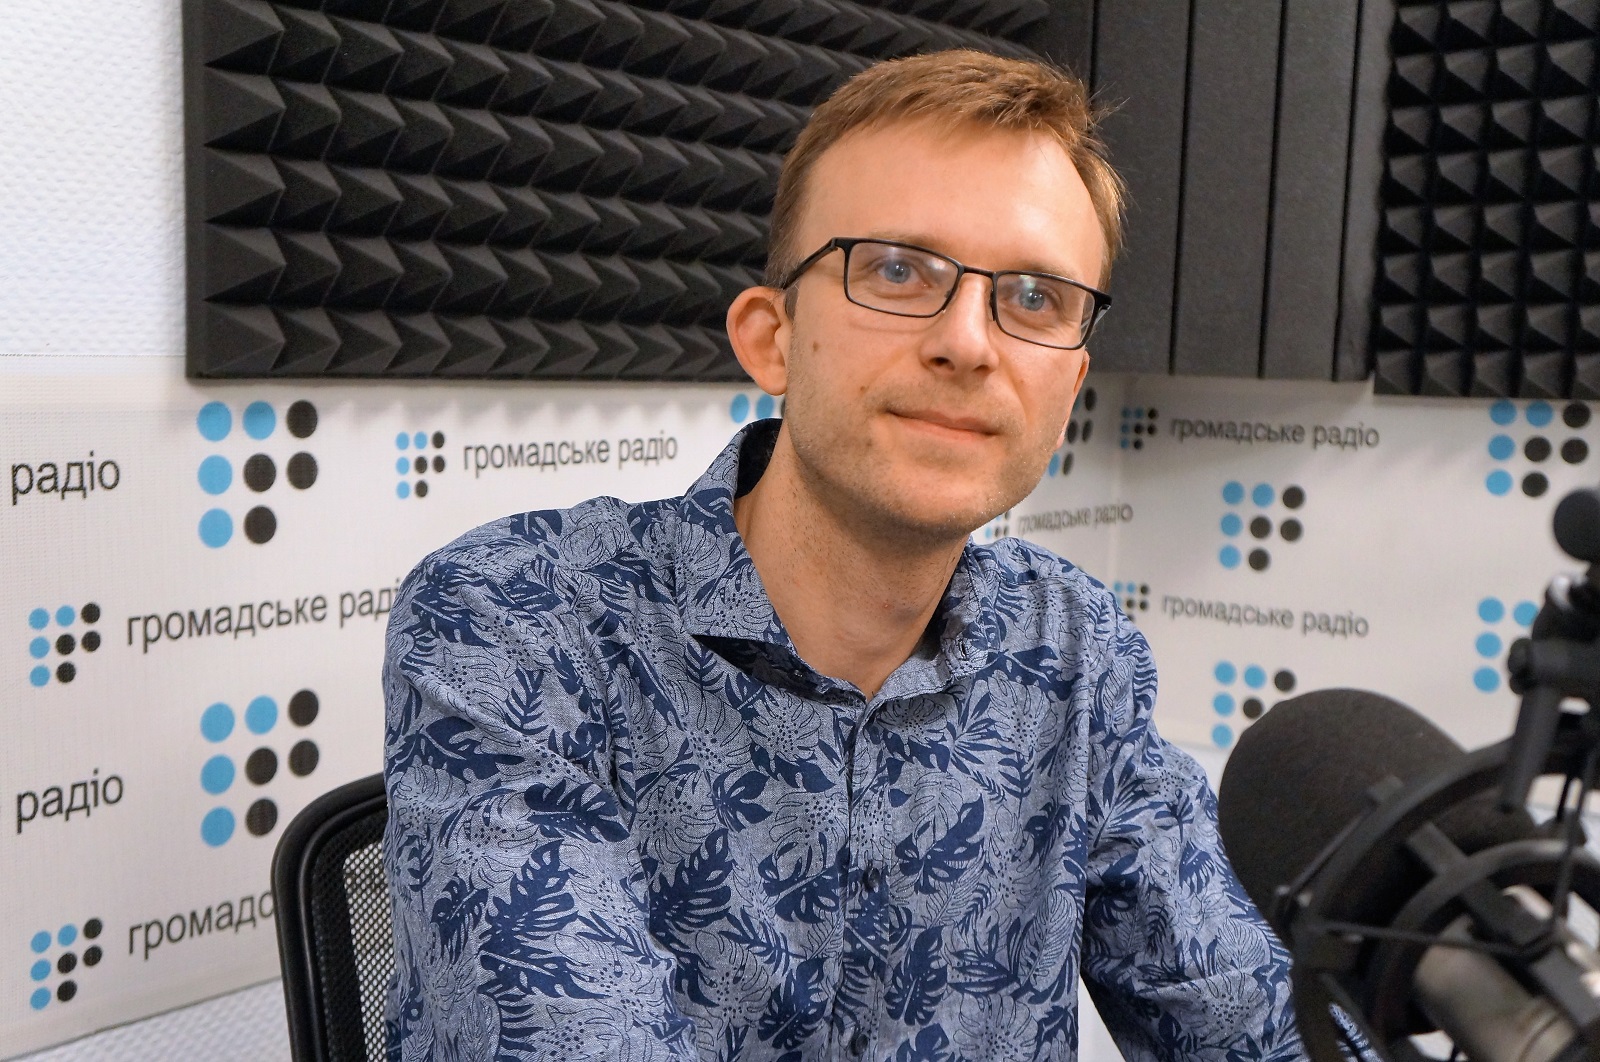 Заявление Плотницкого о «перевороте» — попытка пресечь протесты, — журналист